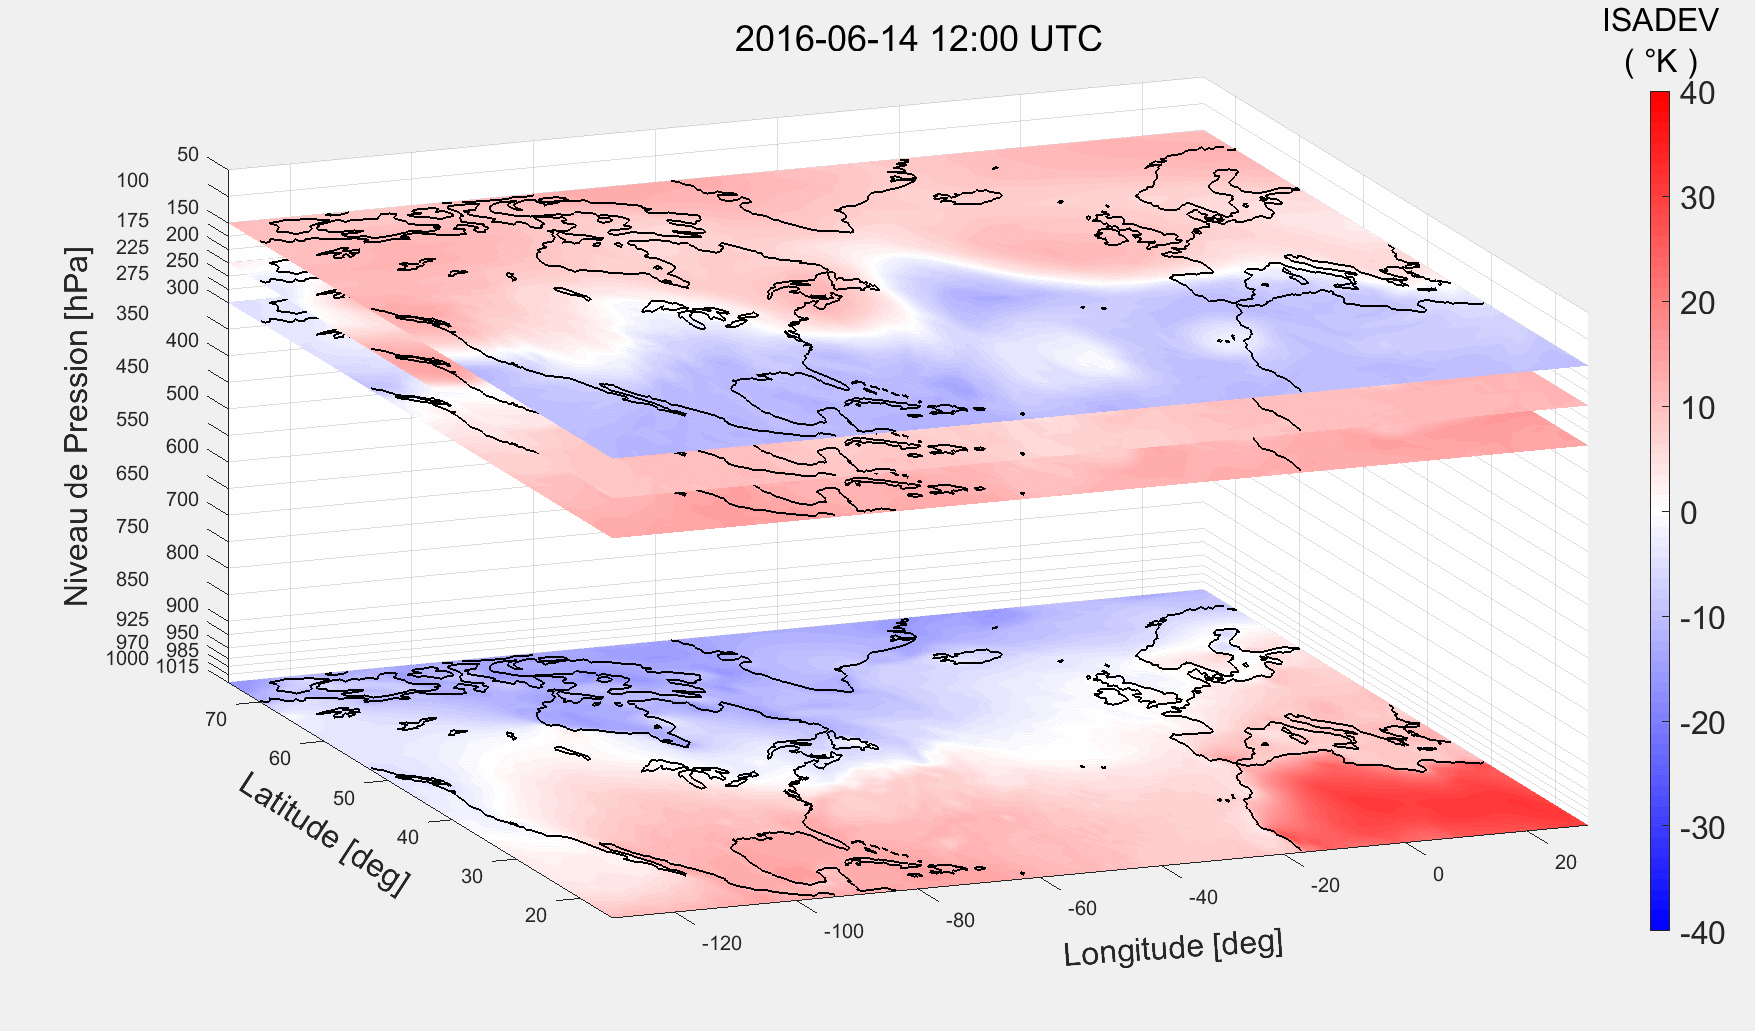 Graphique 3D en météorologie du 14 juin 2016, montrant température et pression par latitude et longitude.